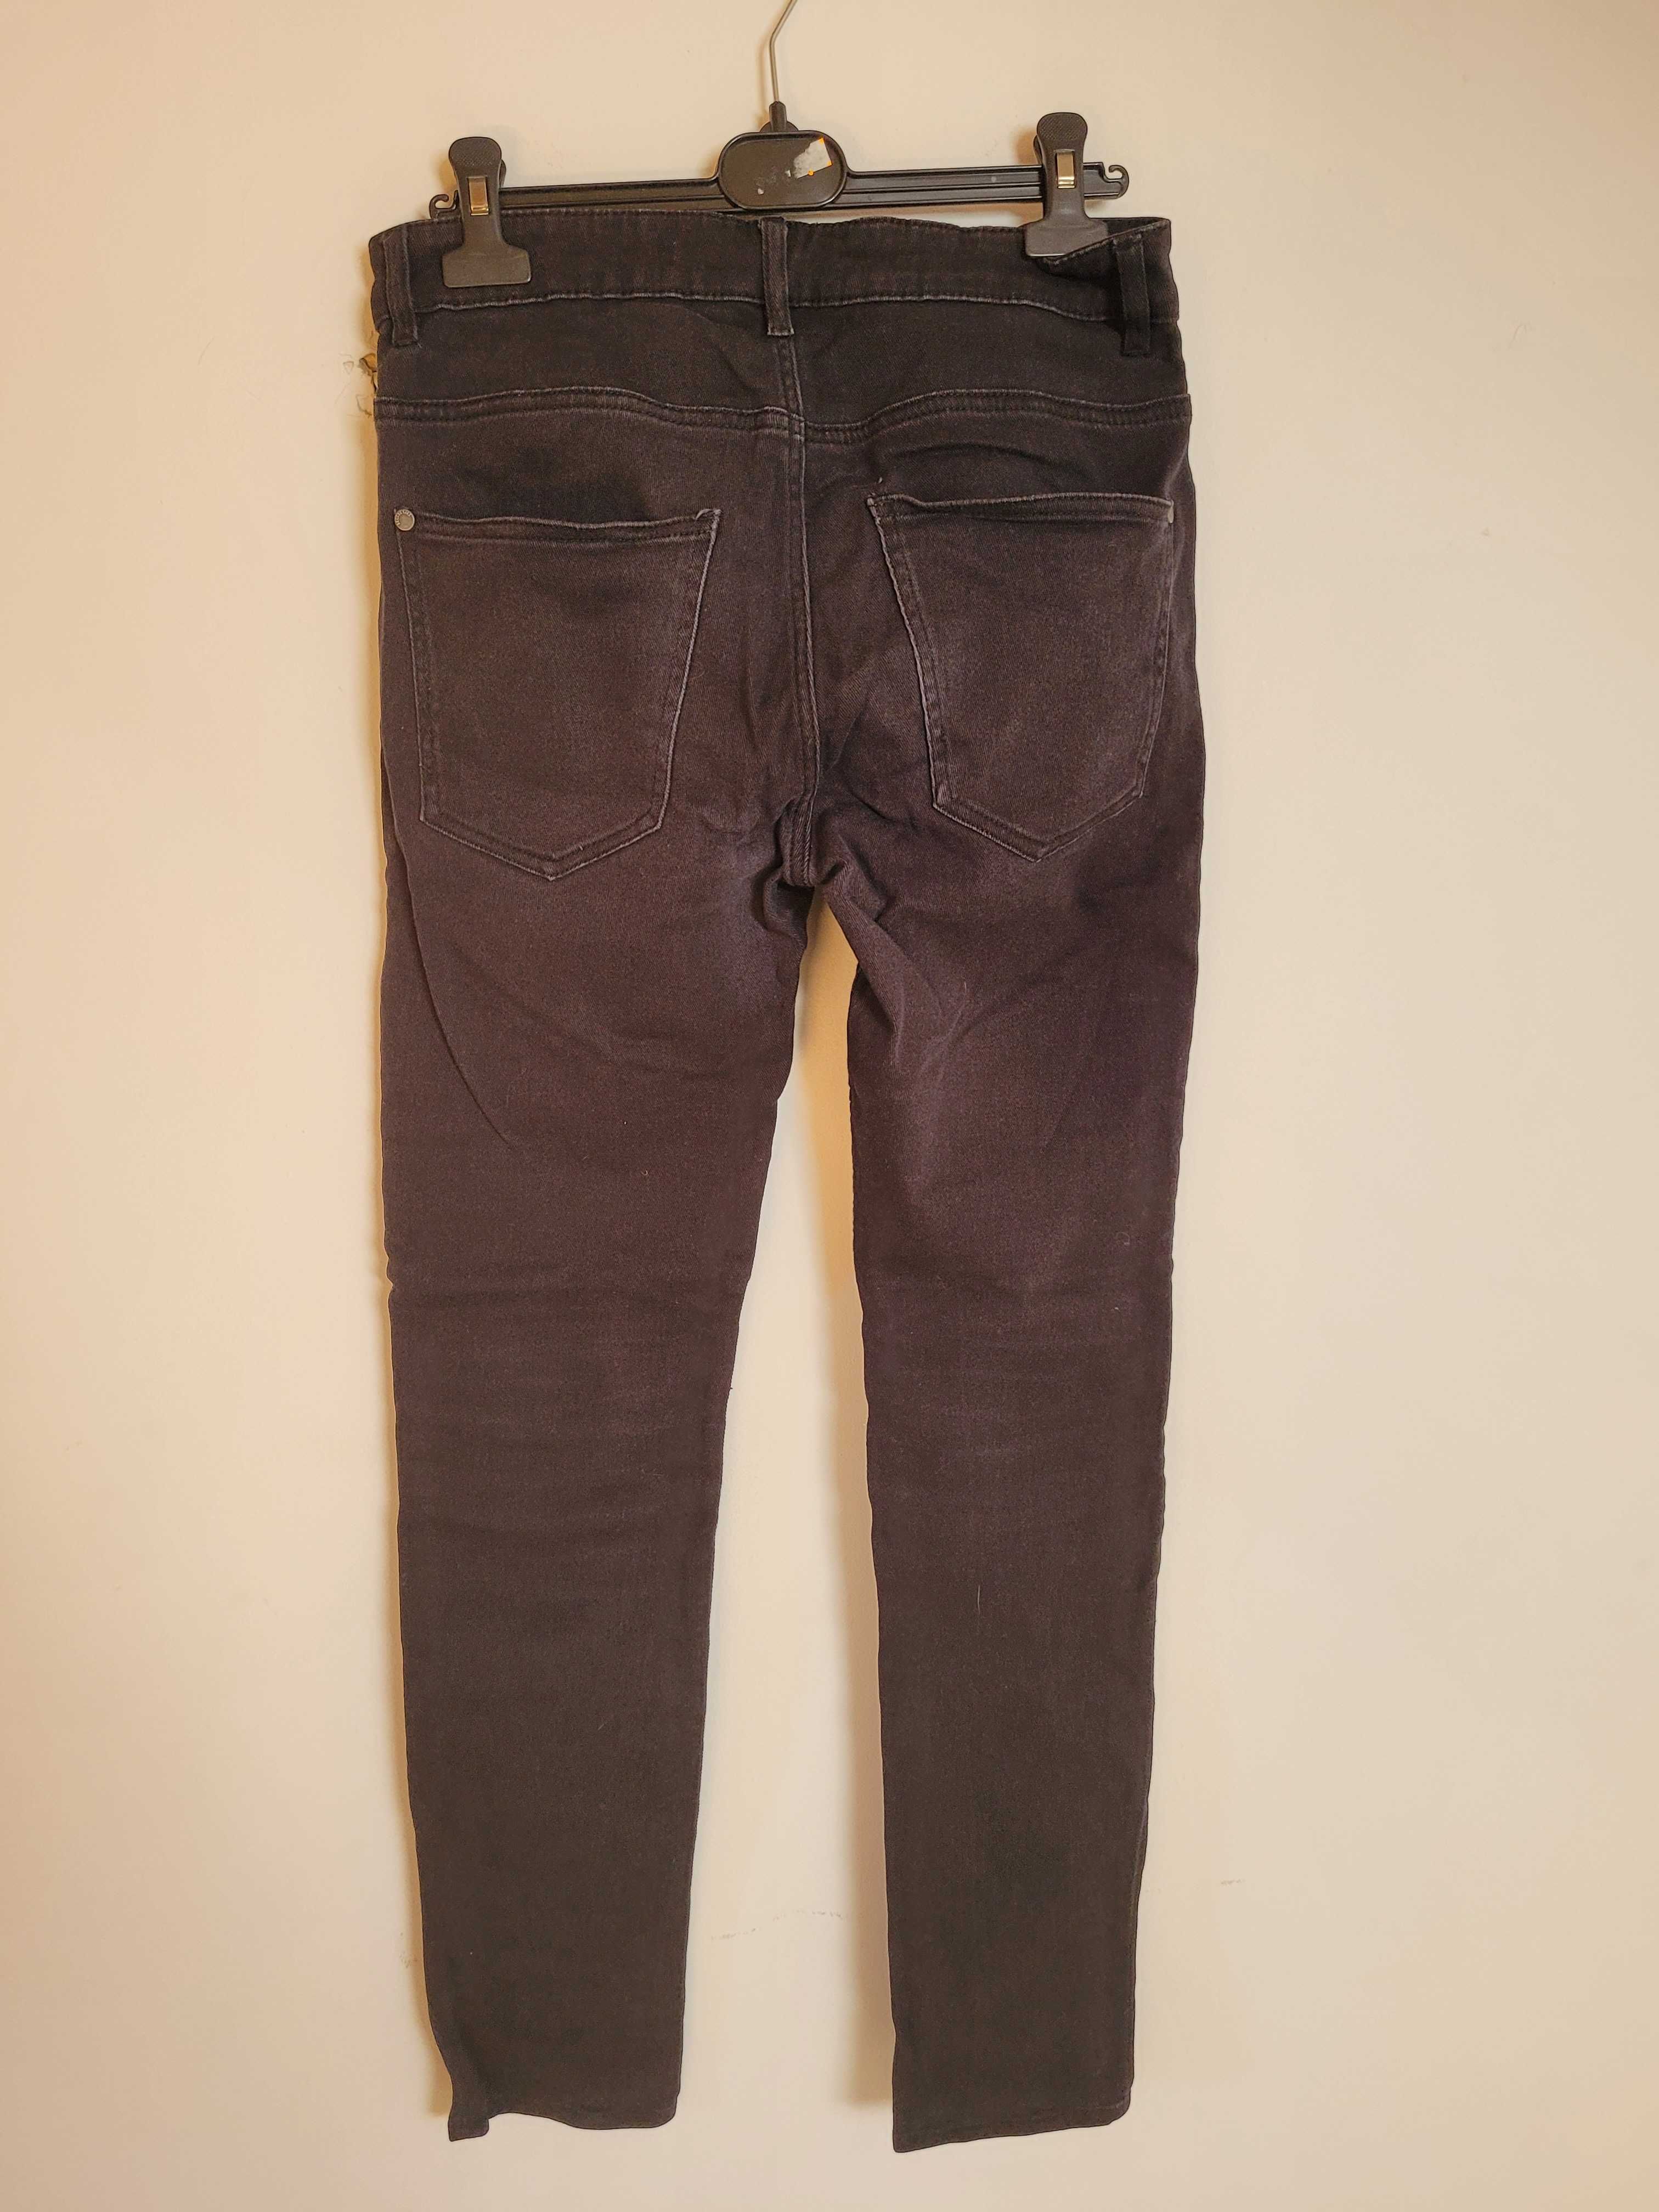 Eleganckie czarne, męskie jeansy skinny rozmiar 32